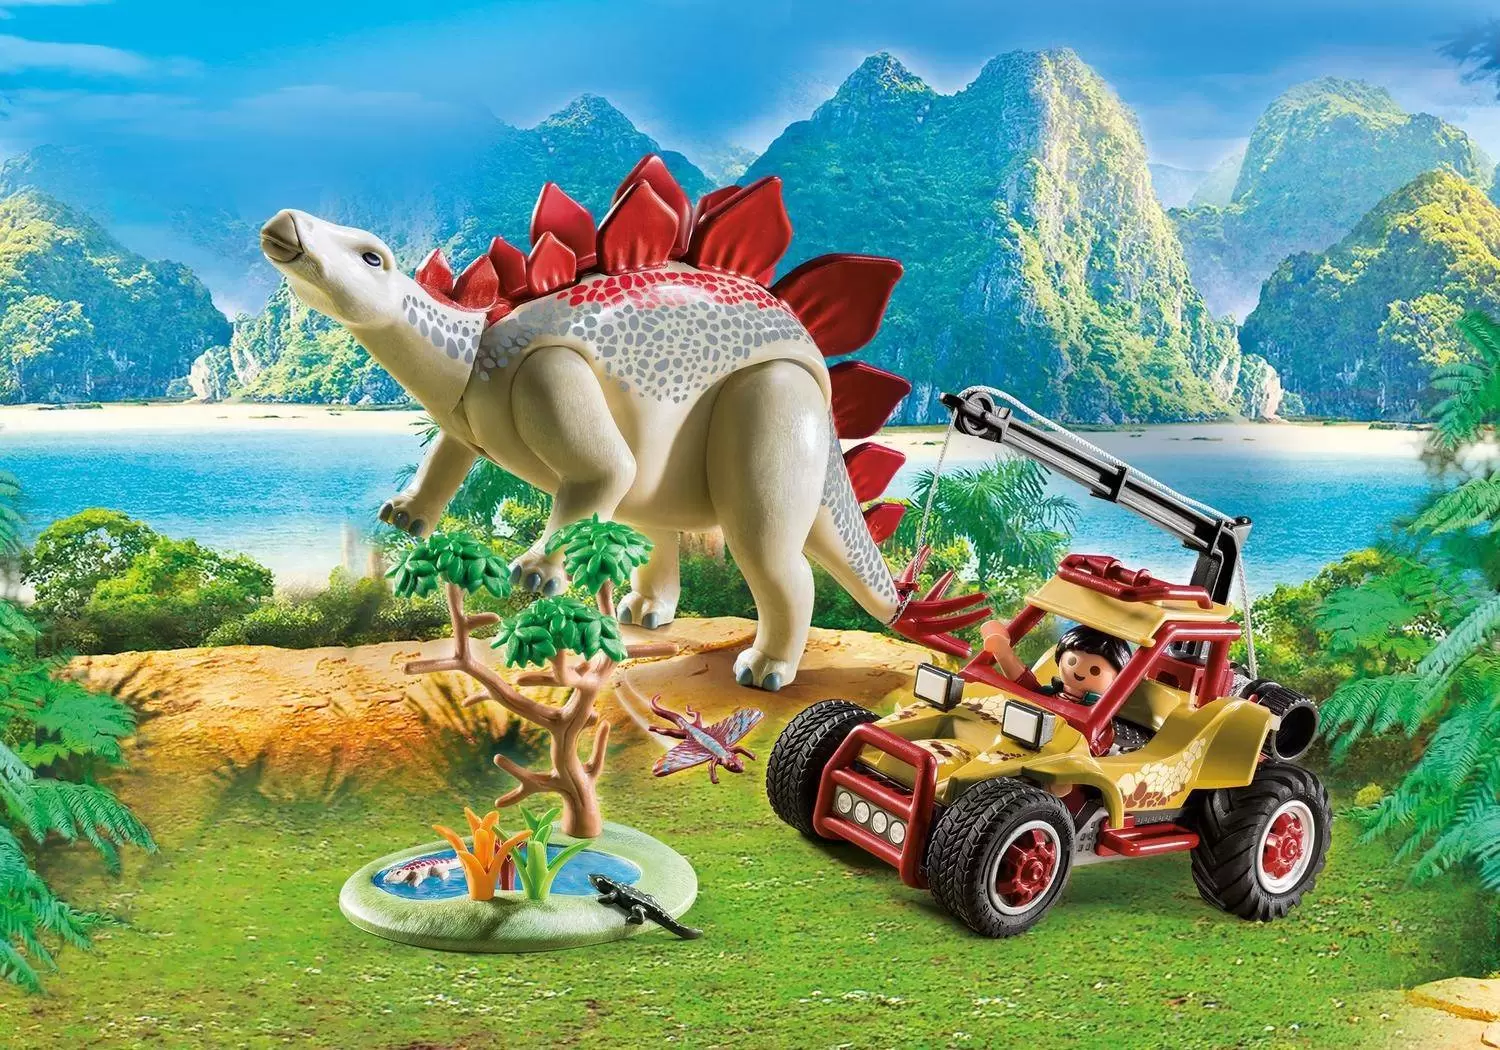 Playmobil Dino Dinosaur Carnivore Herbivore Stone Age Selection